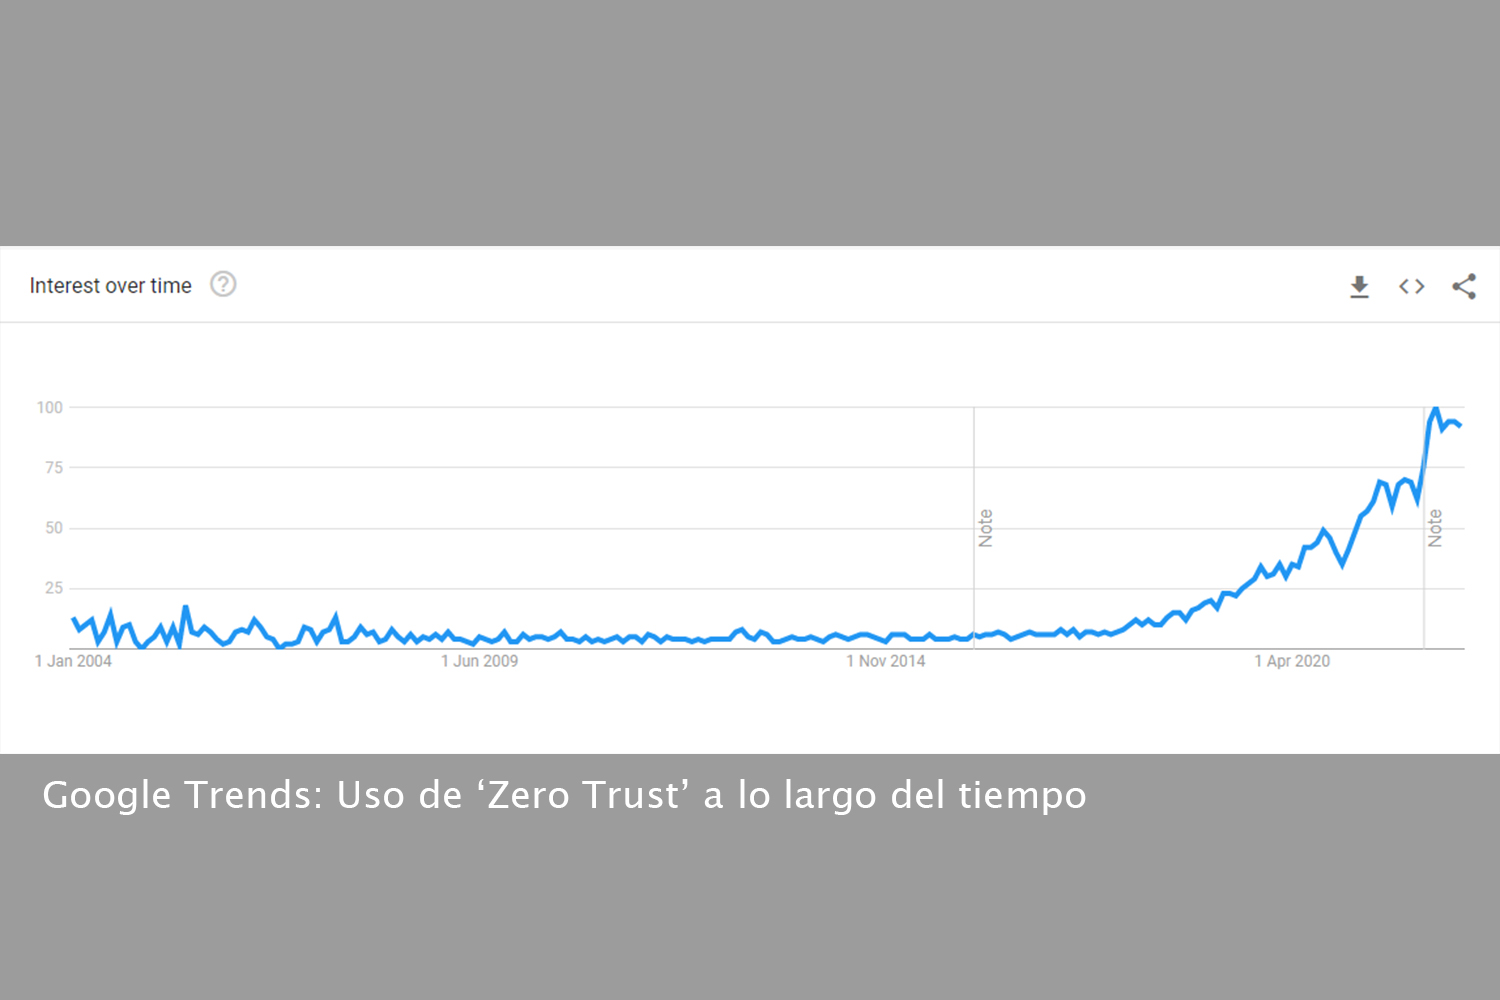 Uso de Zero Trust a lo largo del tiempo, según Google Trends